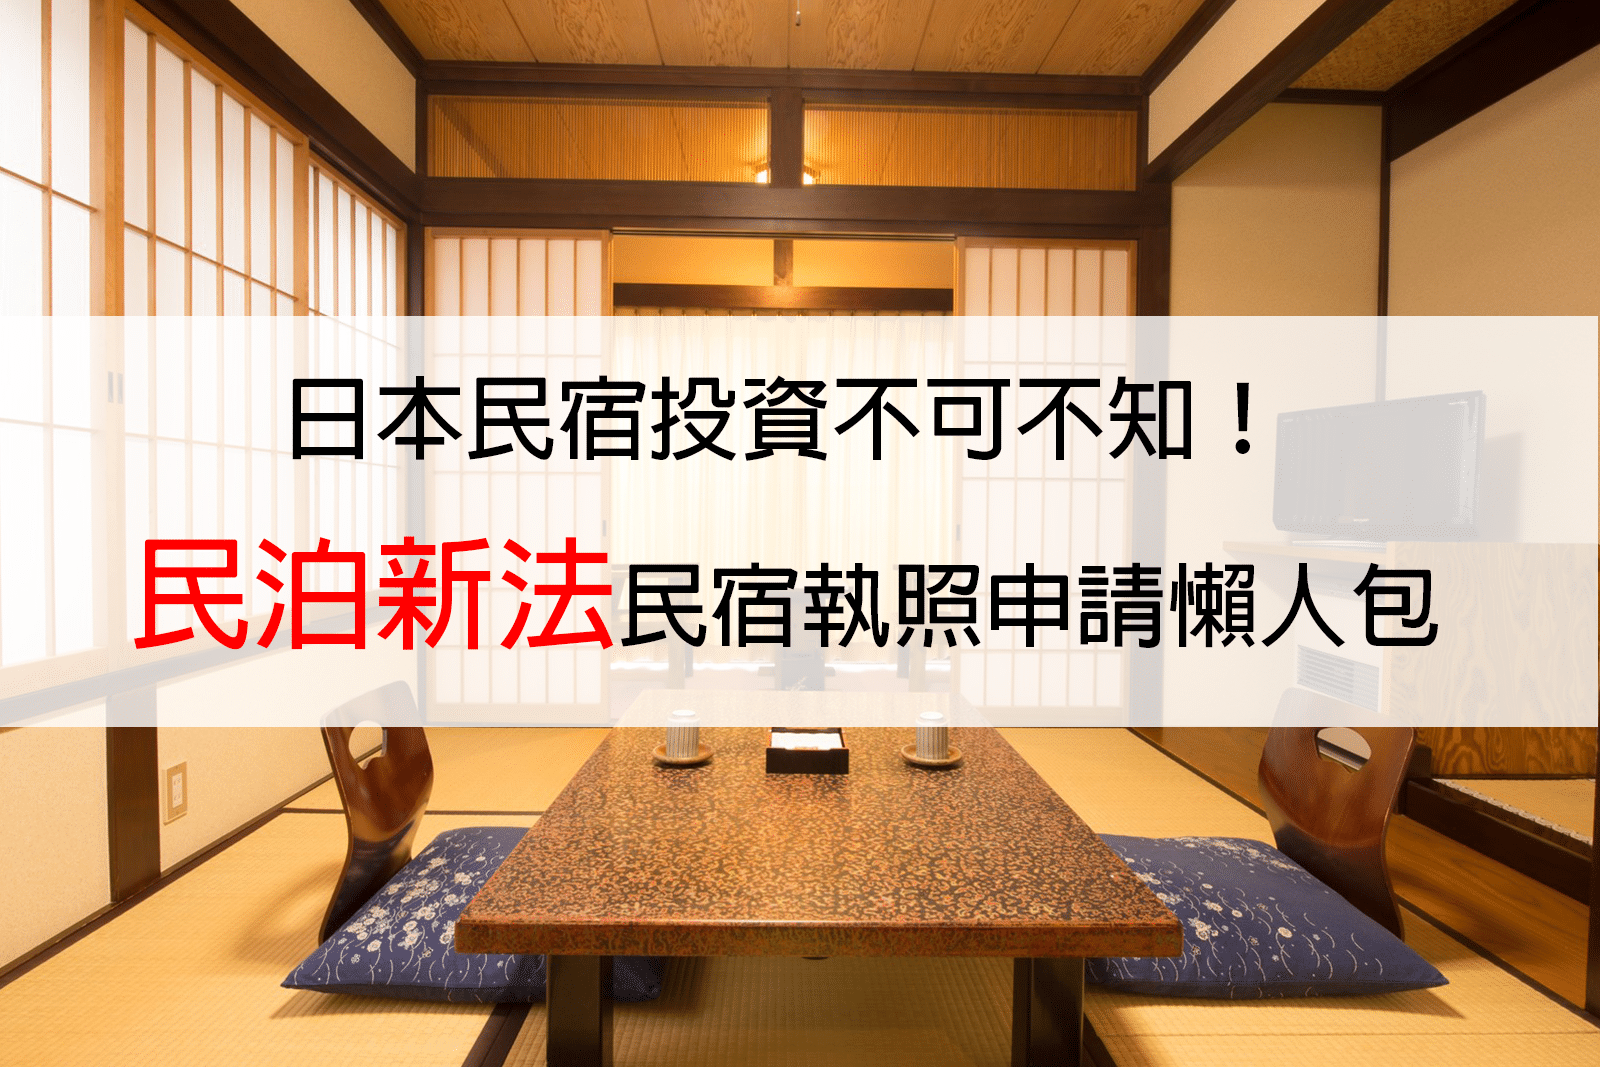 日本民宿投資不可不知 民泊新法 民宿執照申請懶人包 羽日本